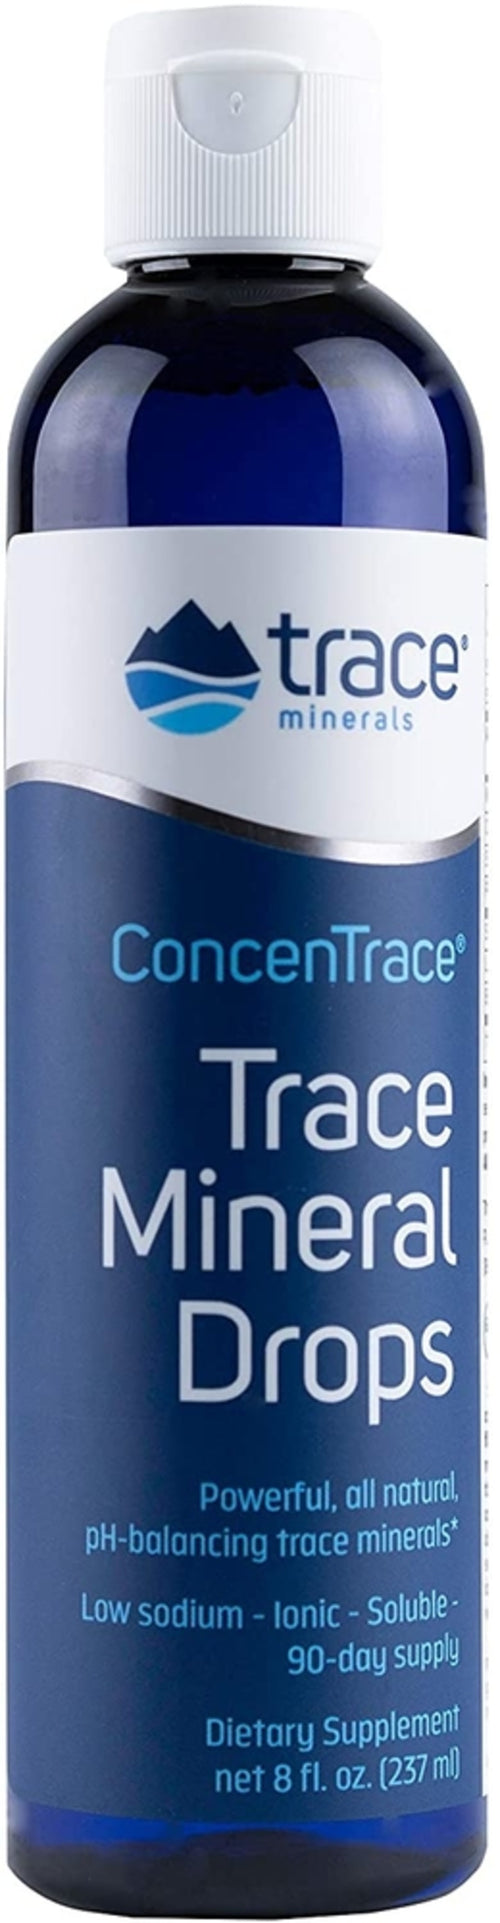 ConcenTrace-spormineraldråber 8 fl oz Flaske      